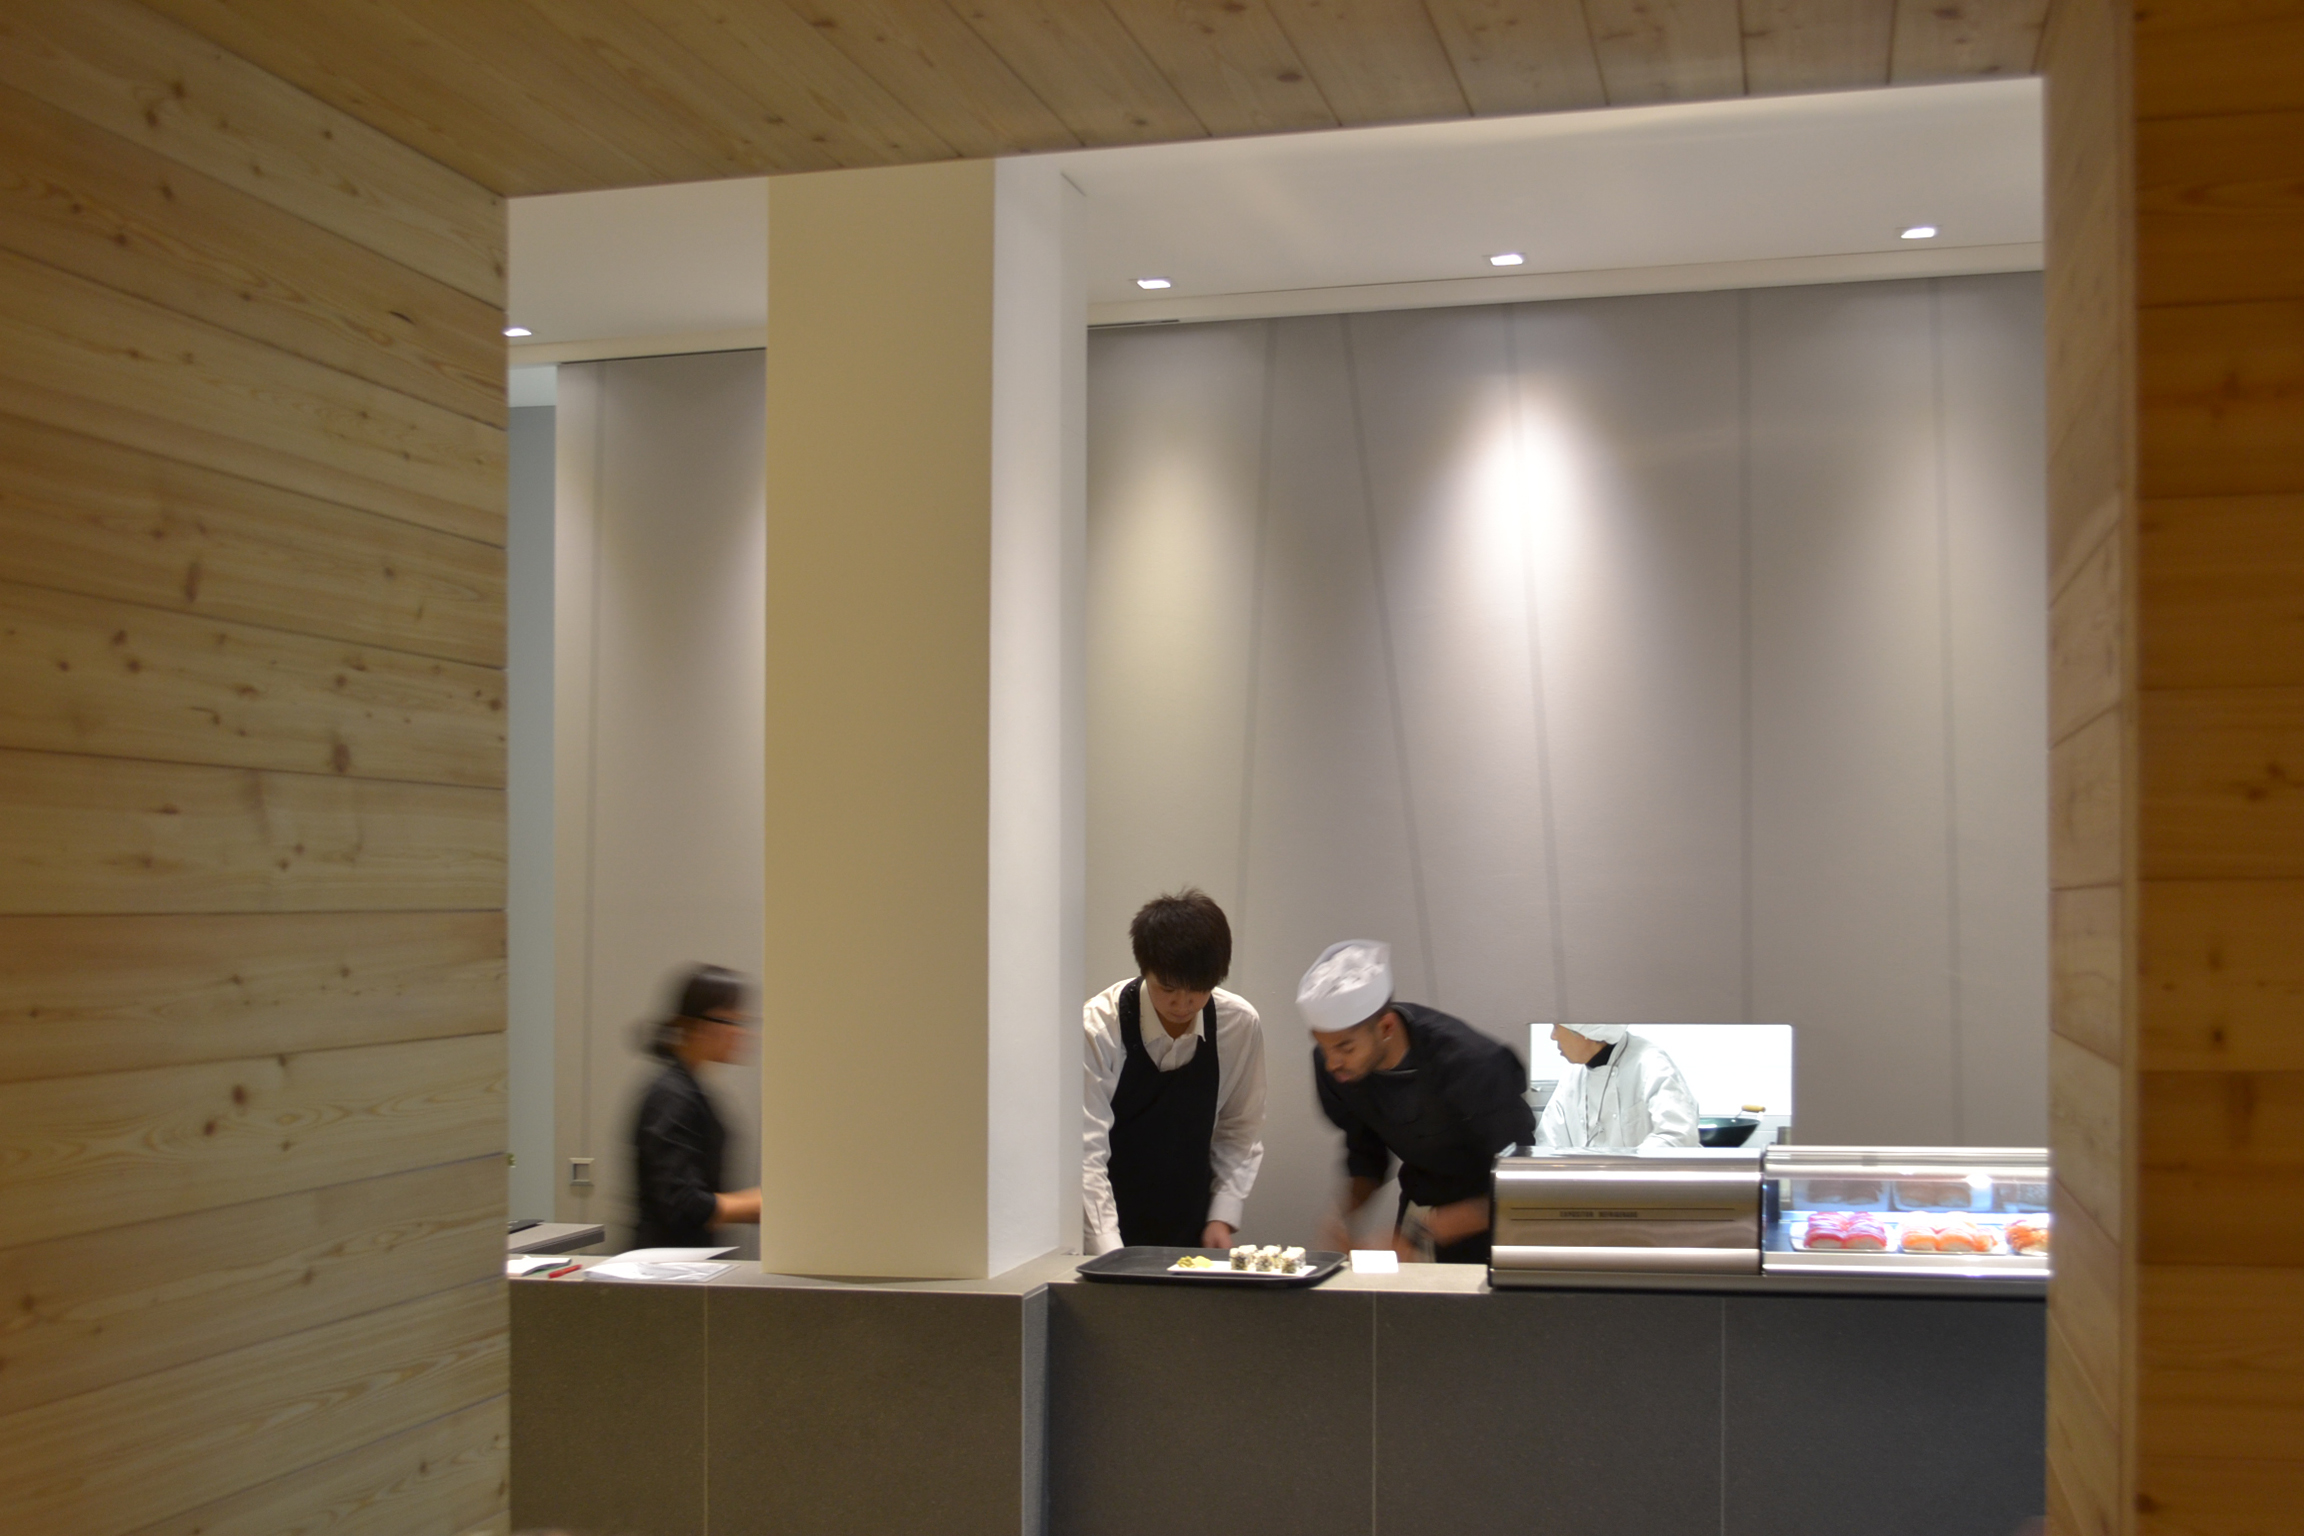 Foto di iKKi Sushi Restaurant a Conegliano Veneto. Veduta interno bancone con personale. Progetto di Machina Architetti Associati, 2011